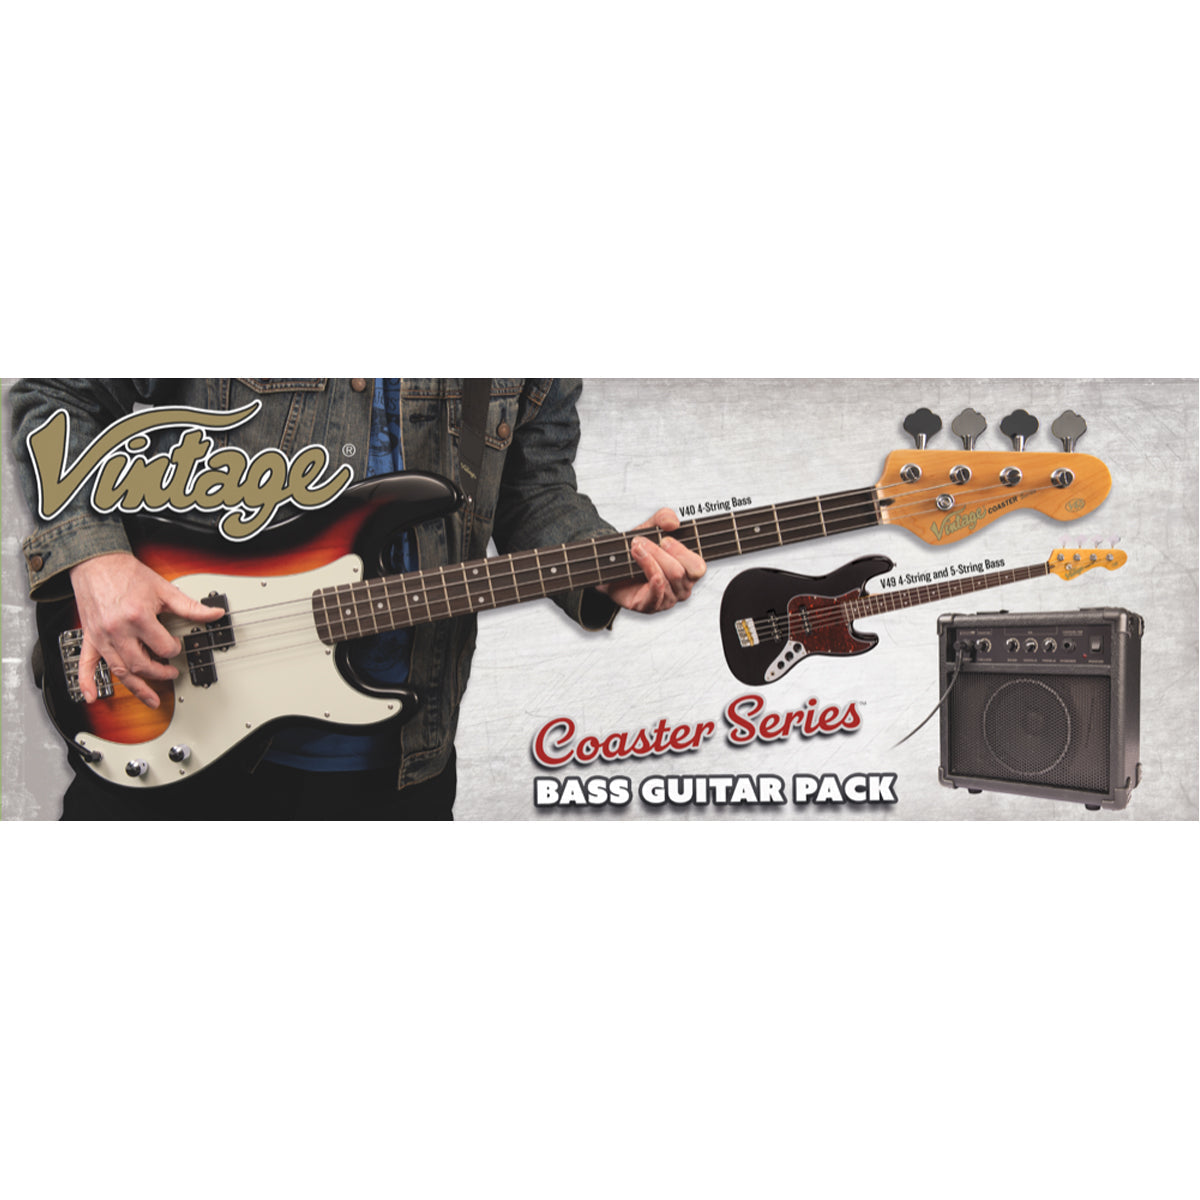 Vintage V495 Coaster Series 5-String Bass Guitar Pack ~ Boulevard Black, Bass Guitar Packs for sale at Richards Guitars.